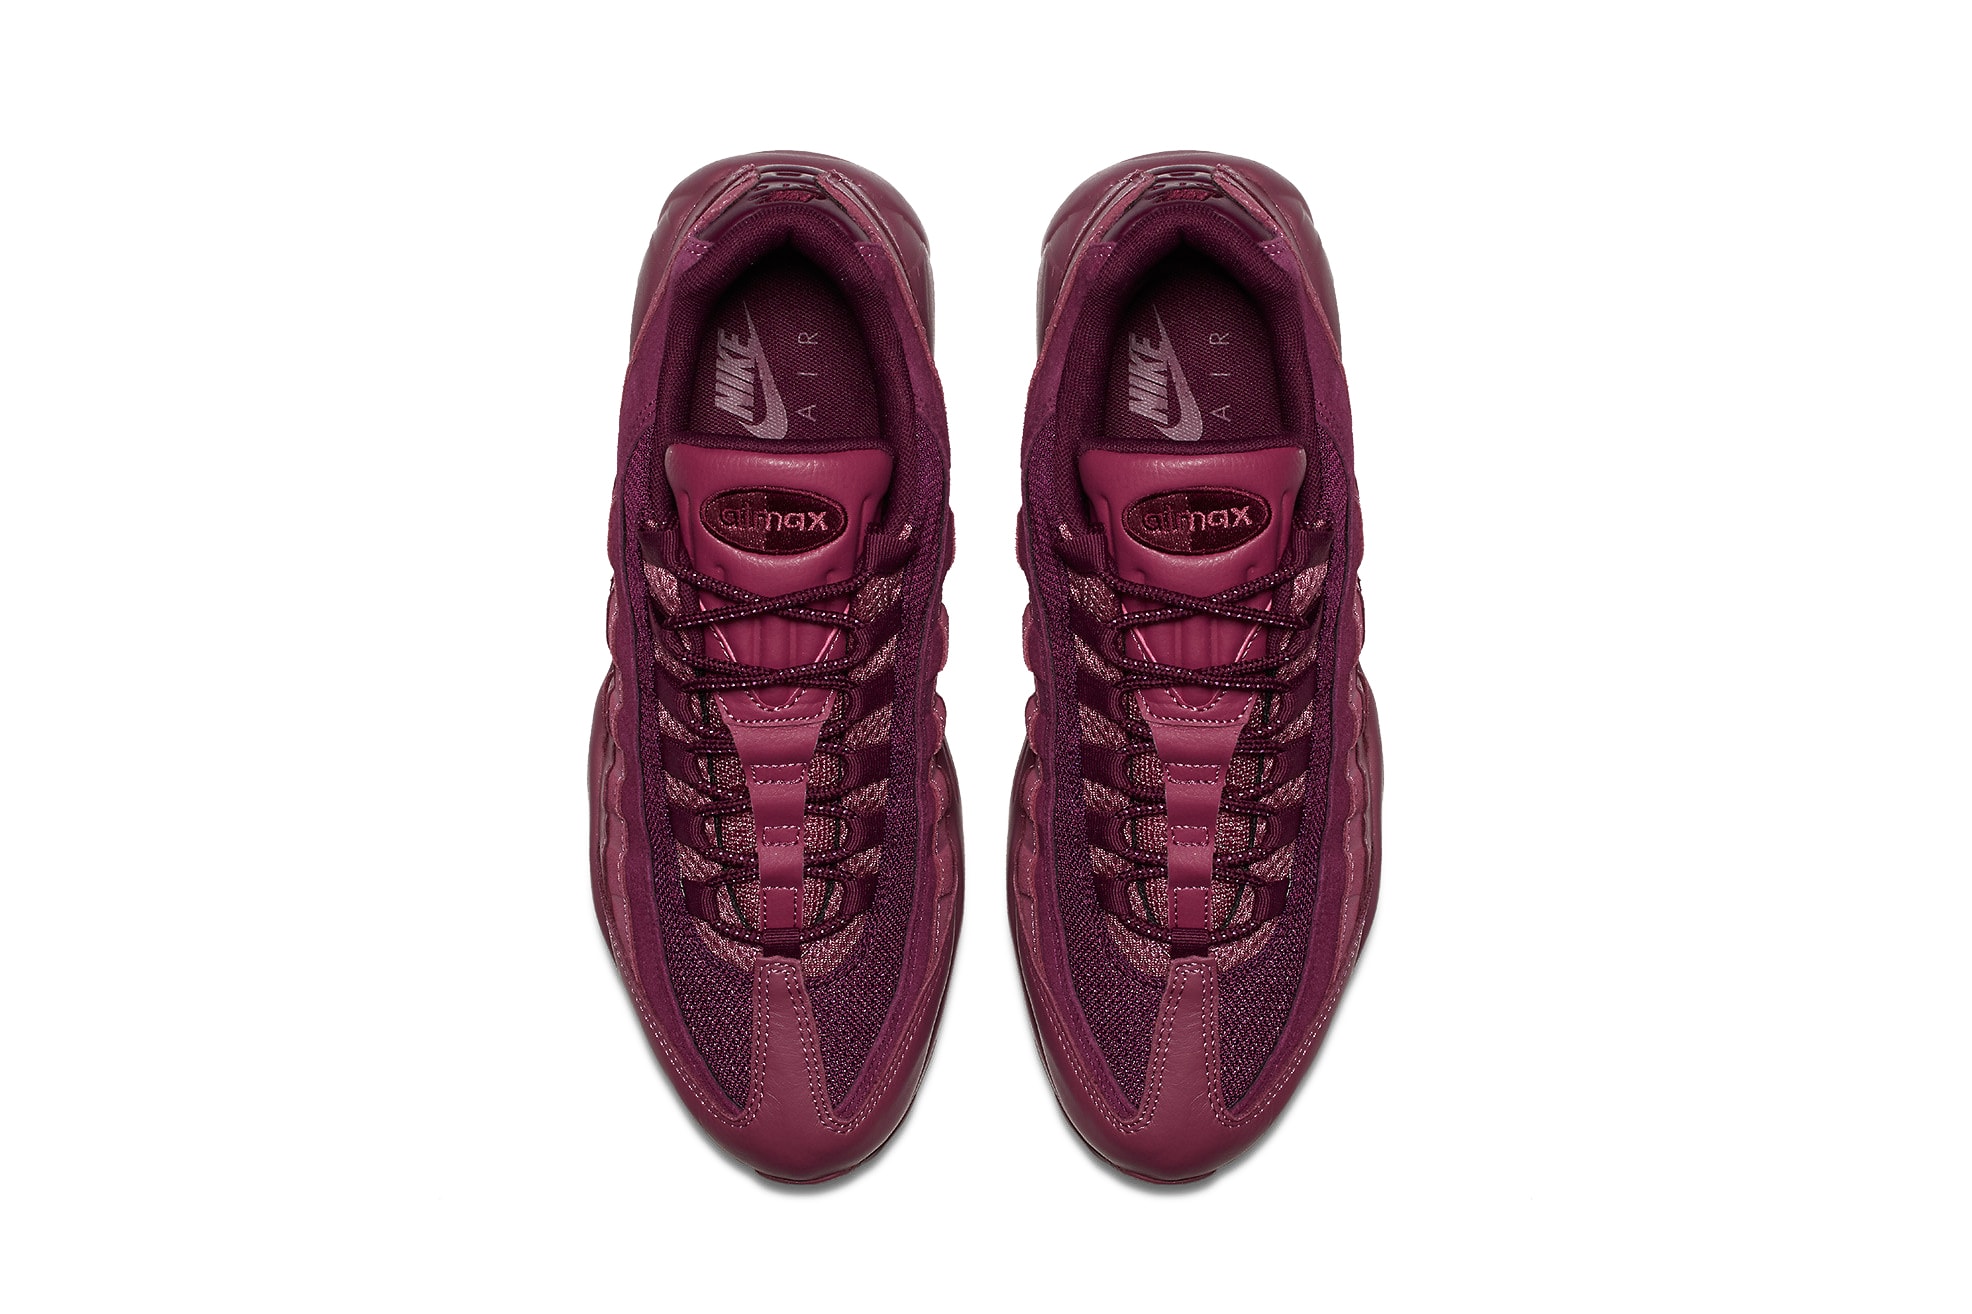 Nike Air Max 95 Vintage Wine Silhouette Burgundy Red Purple Dark Oxblood Shoe Sneaker